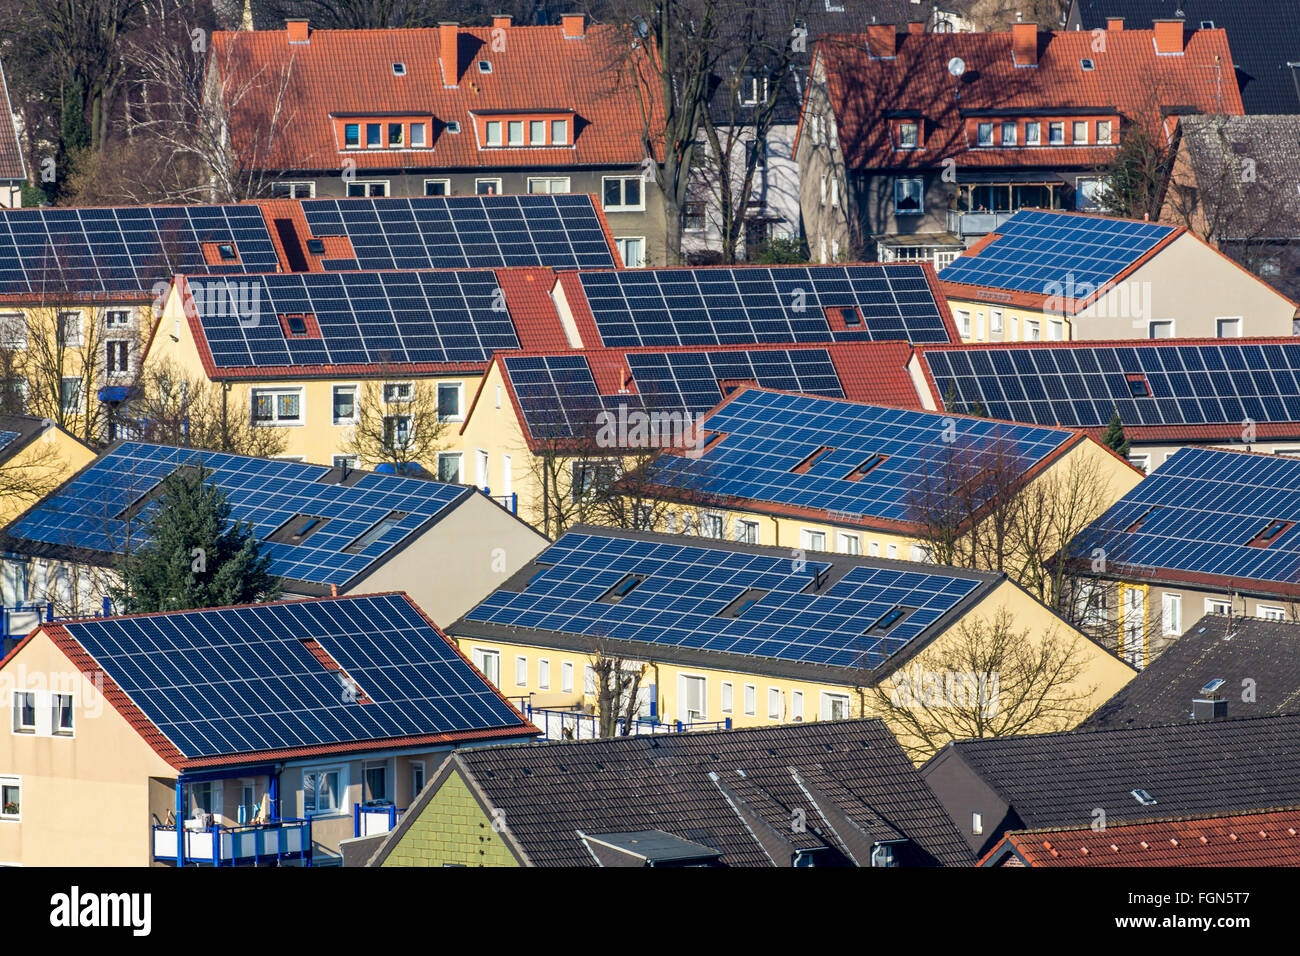 Casas con paneles solares en el techo, la energía solar, Bottrop, Alemania Foto de stock